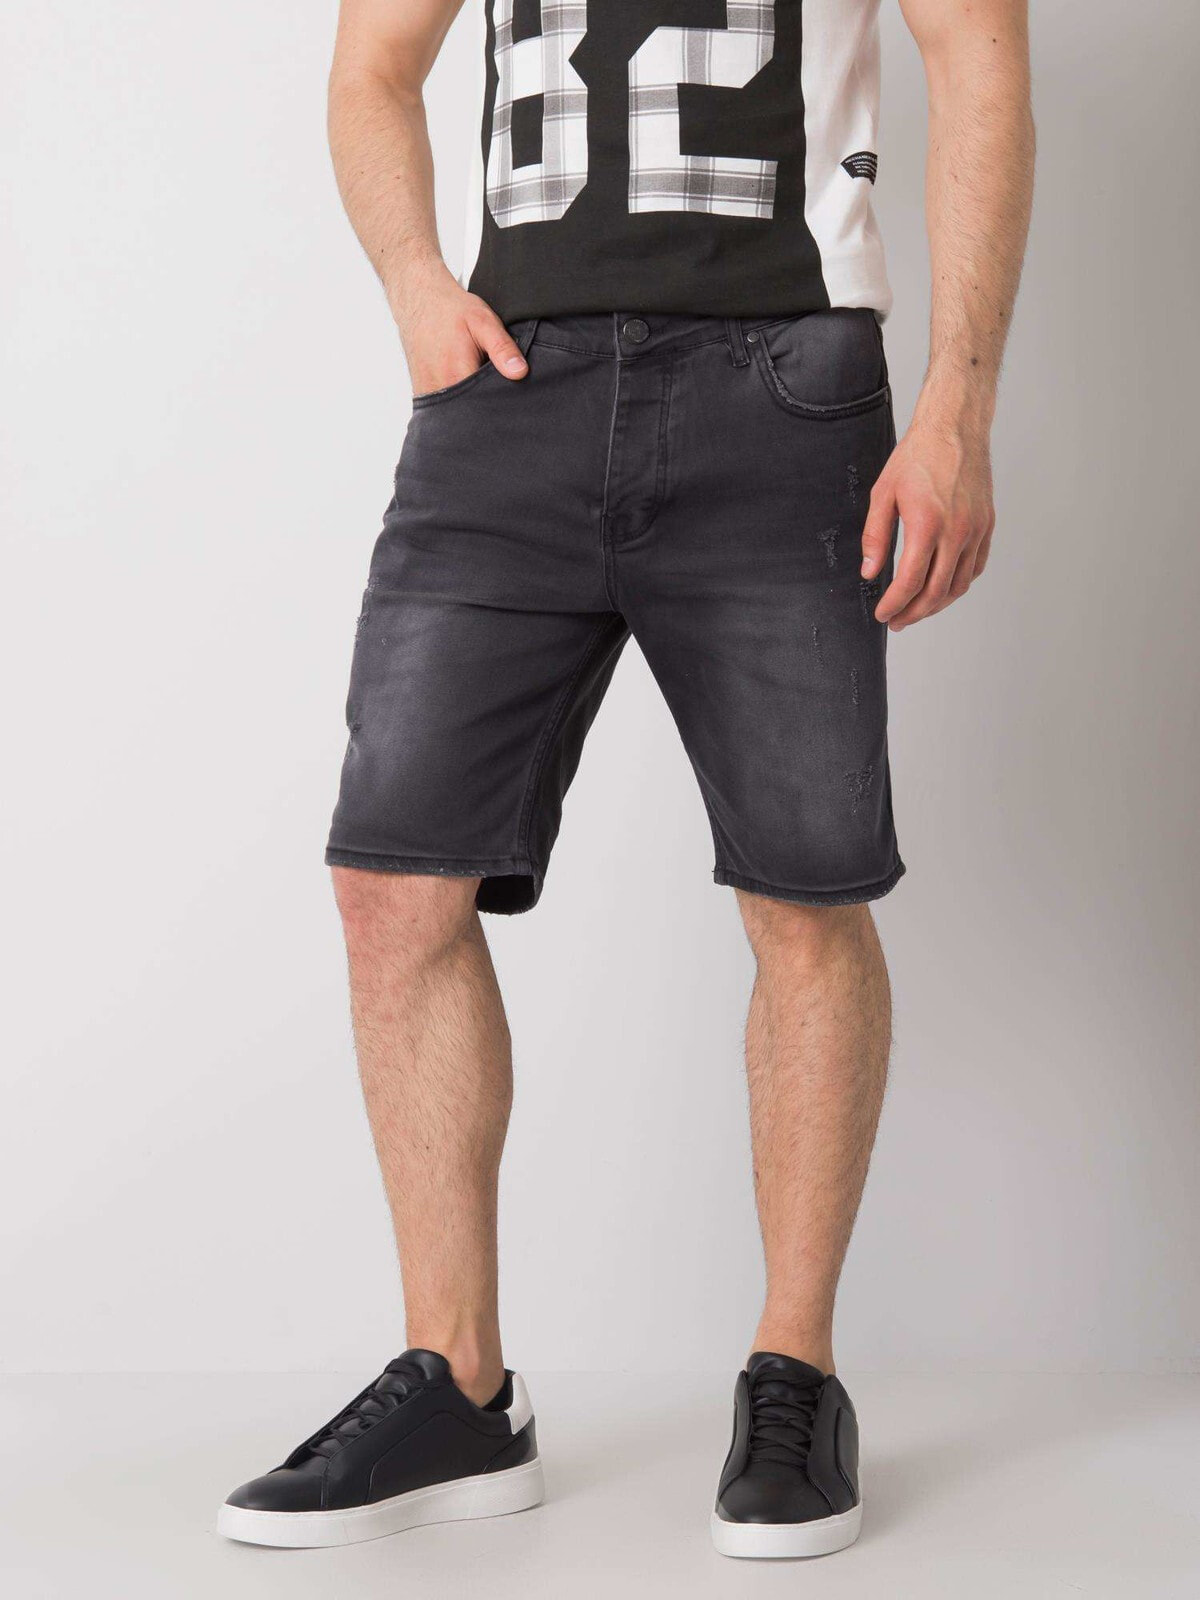 Мужские шорты черные джинсовые длинные Factory Price-MH-SN-3003-1.71P-czarny цвет черный размер S — купить недорого с доставкой, 44713